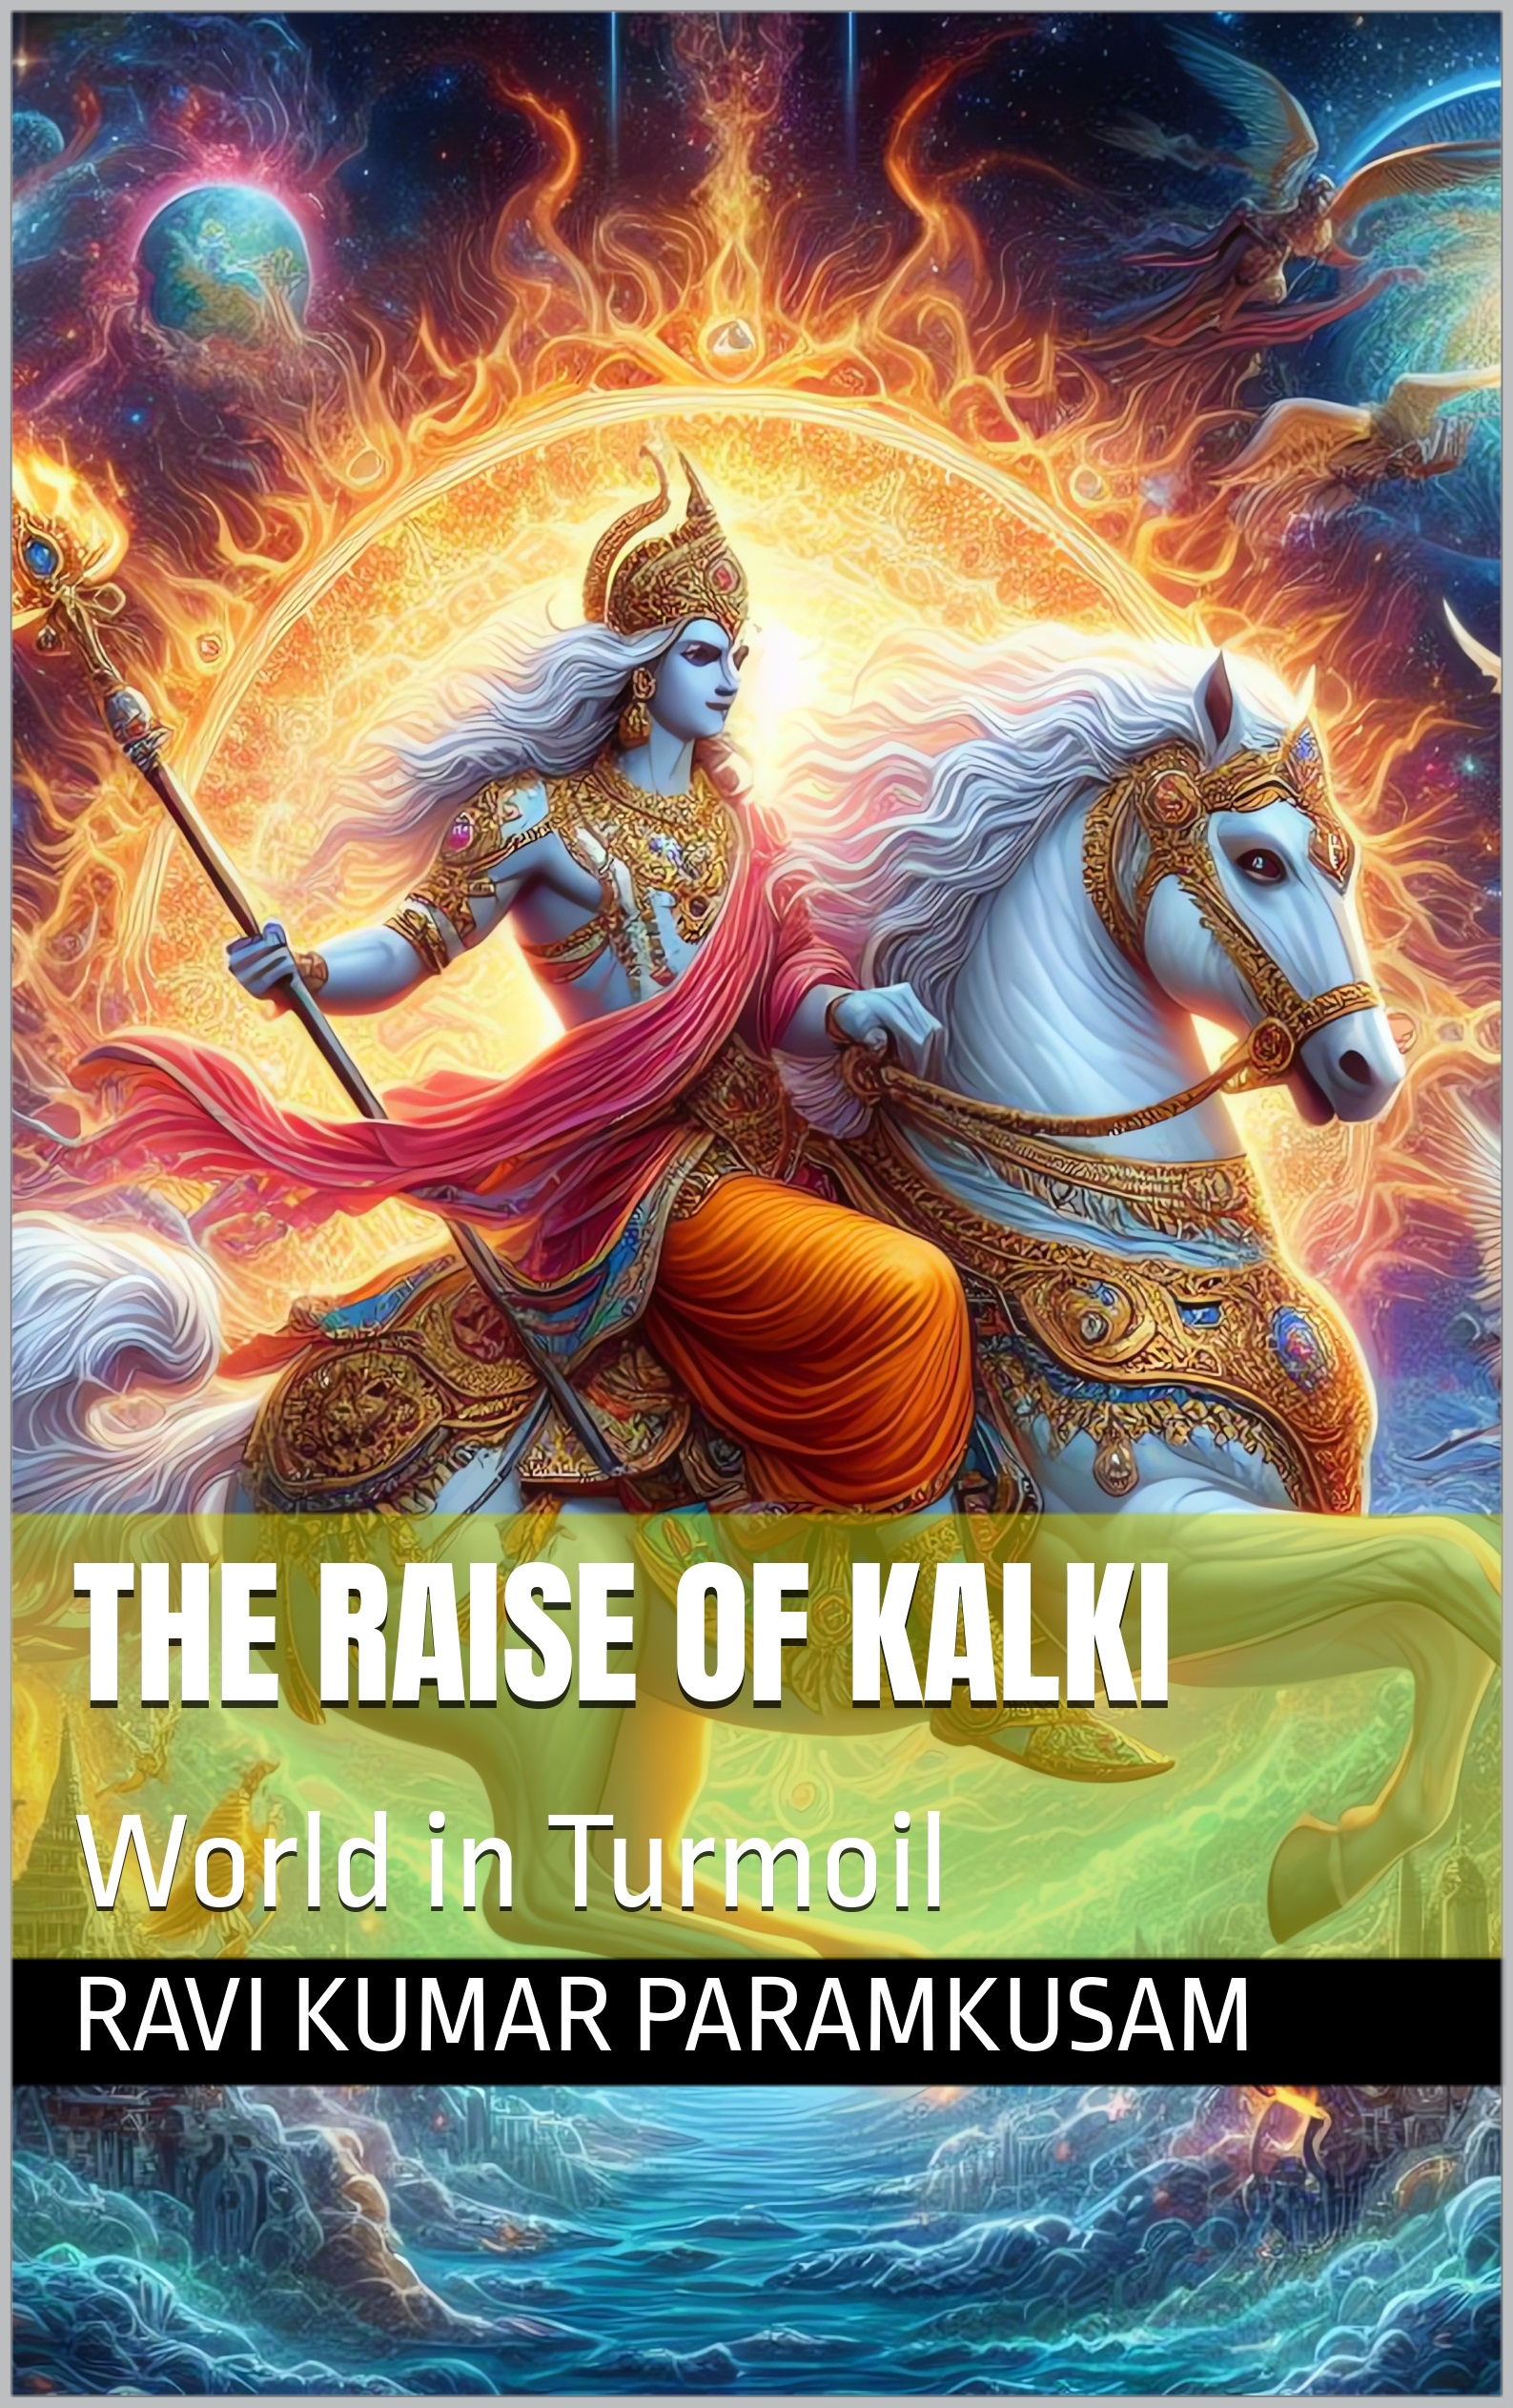 The Raise of Kalki by Ravi